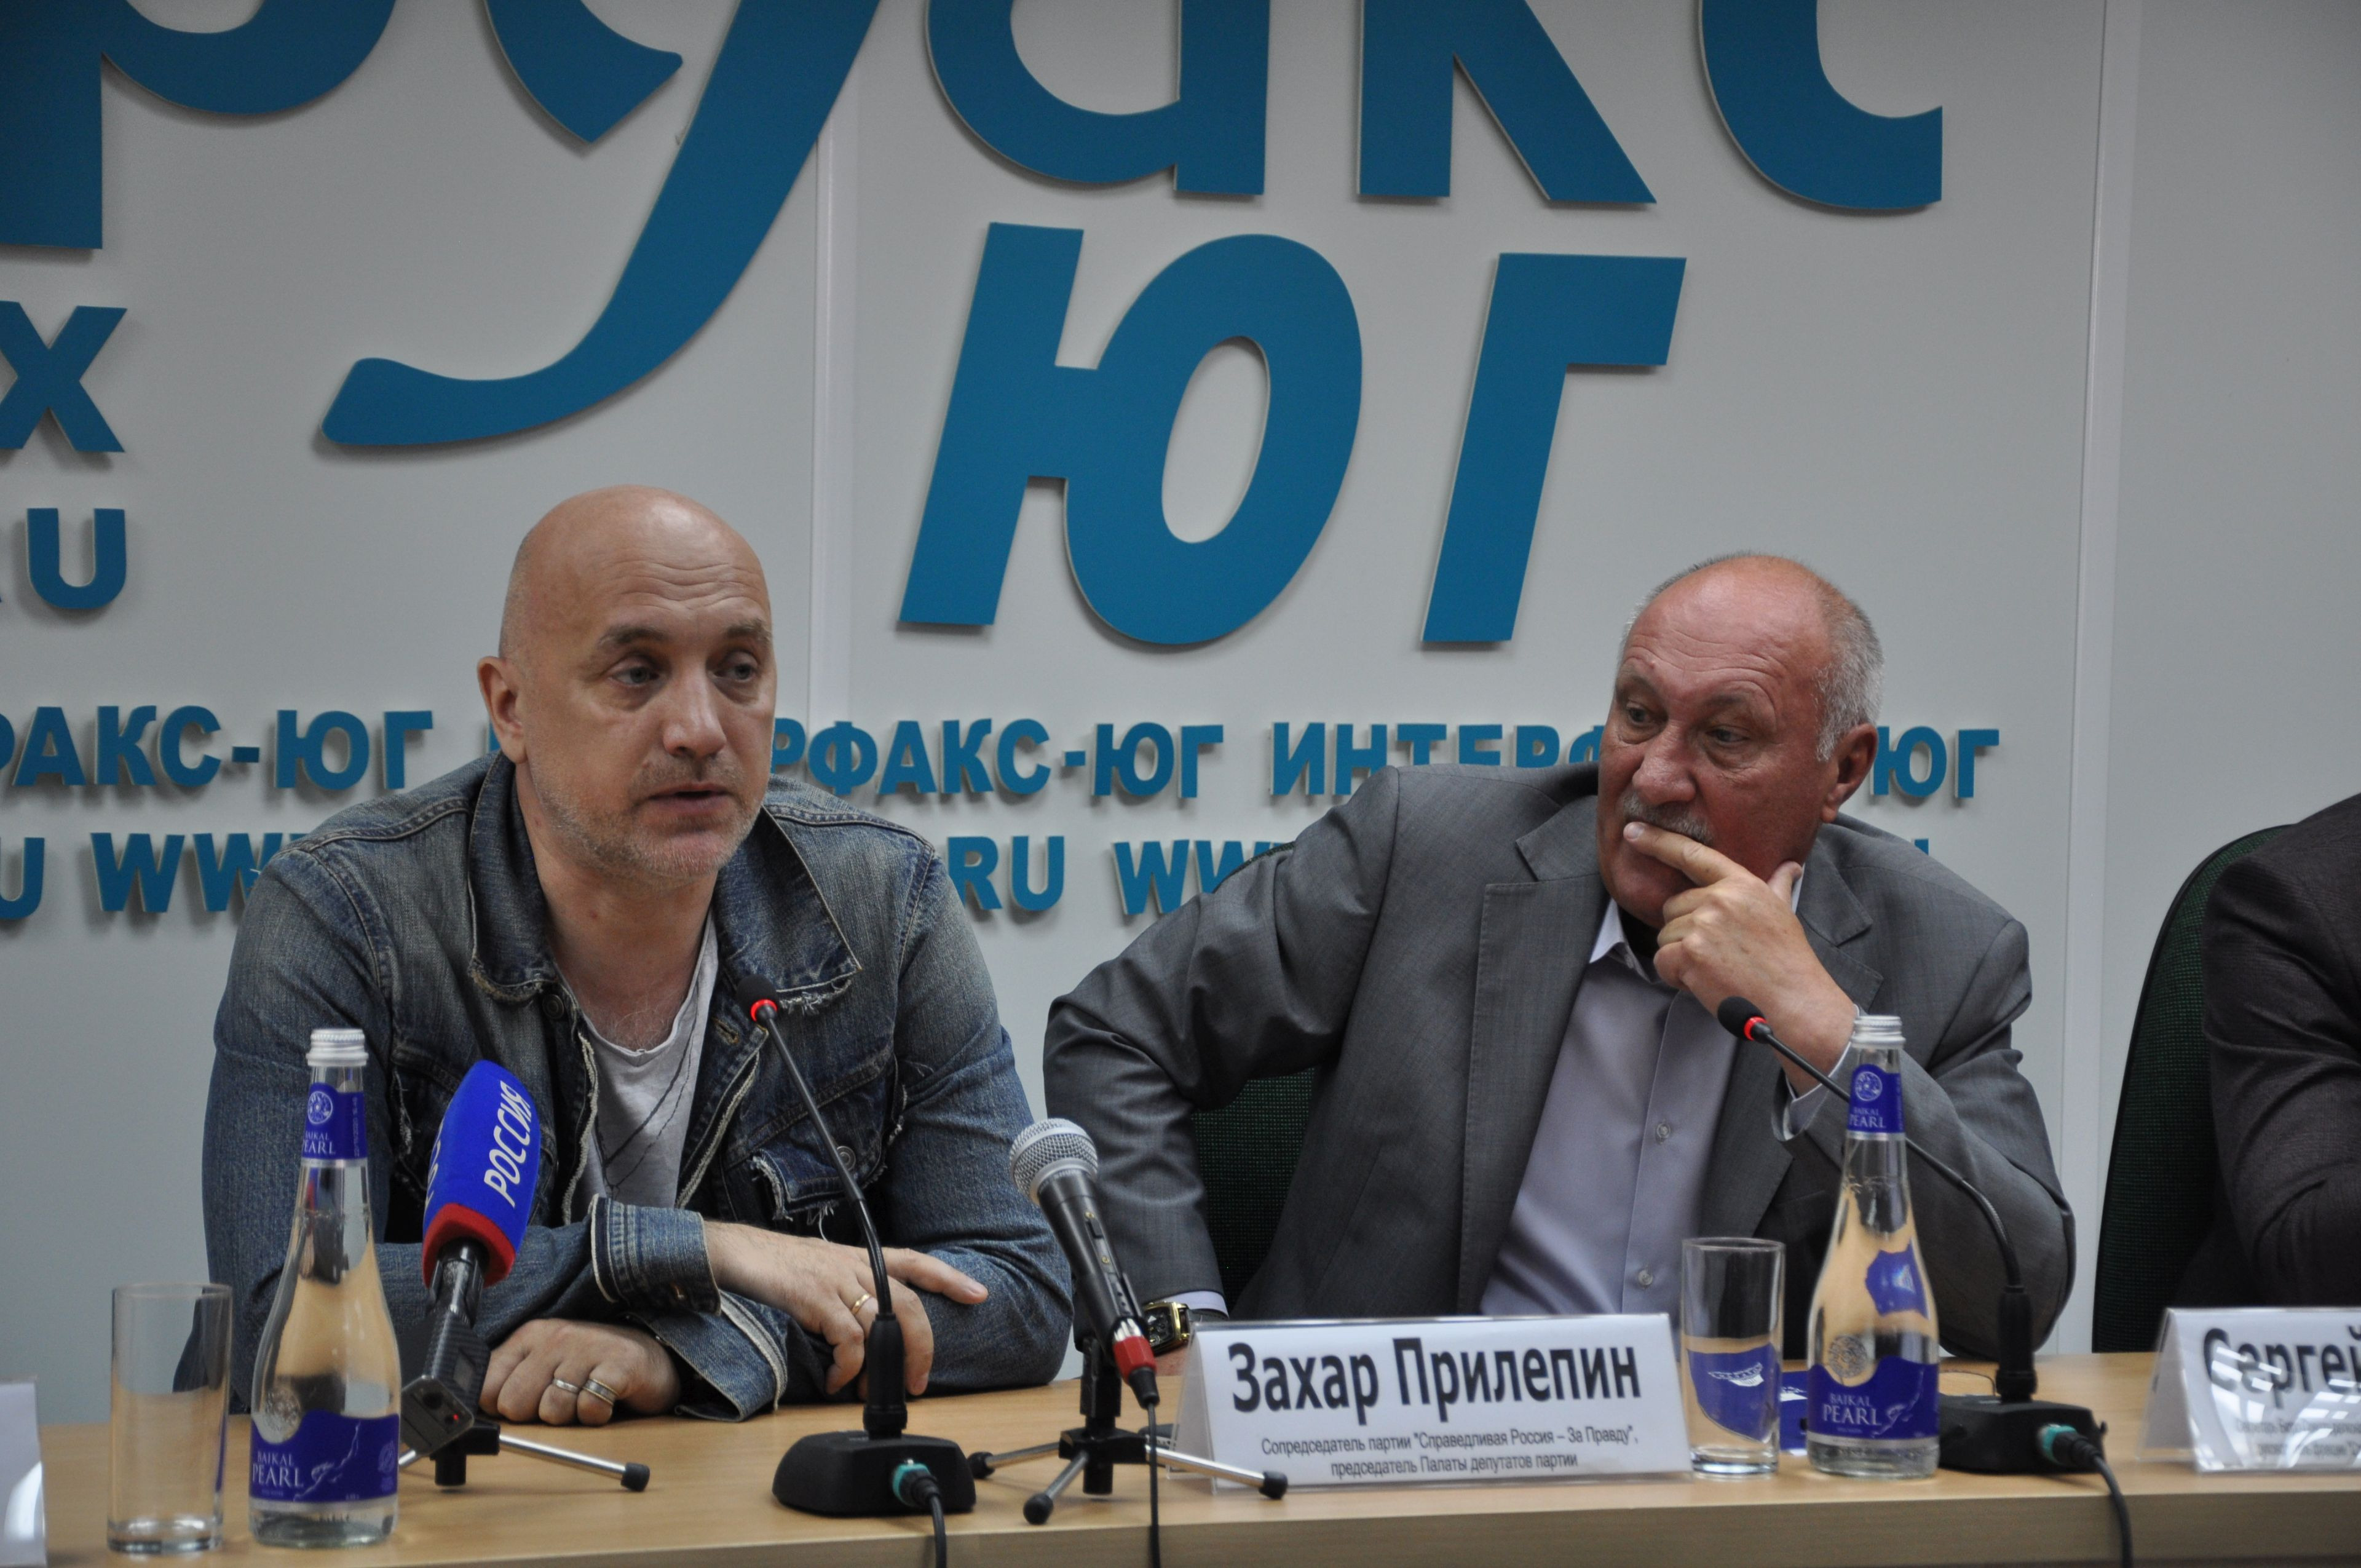 Прилепин считает необходимым создание коалиции КПРФ и "Справедливой России - За Правду"